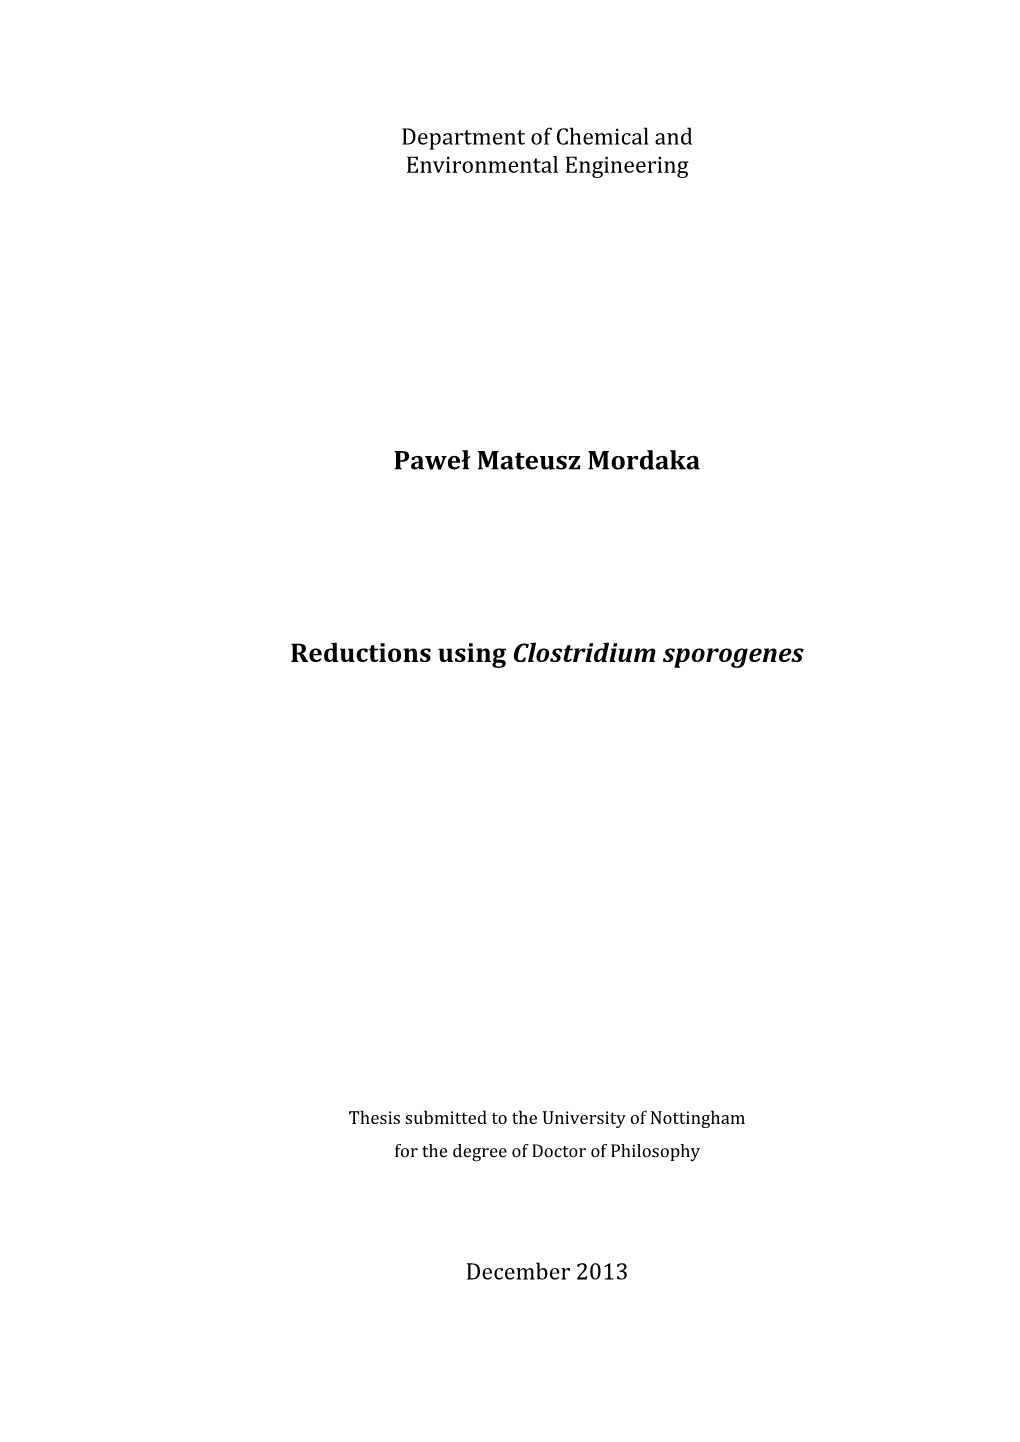 Paweł Mateusz Mordaka Reductions Using Clostridium Sporogenes